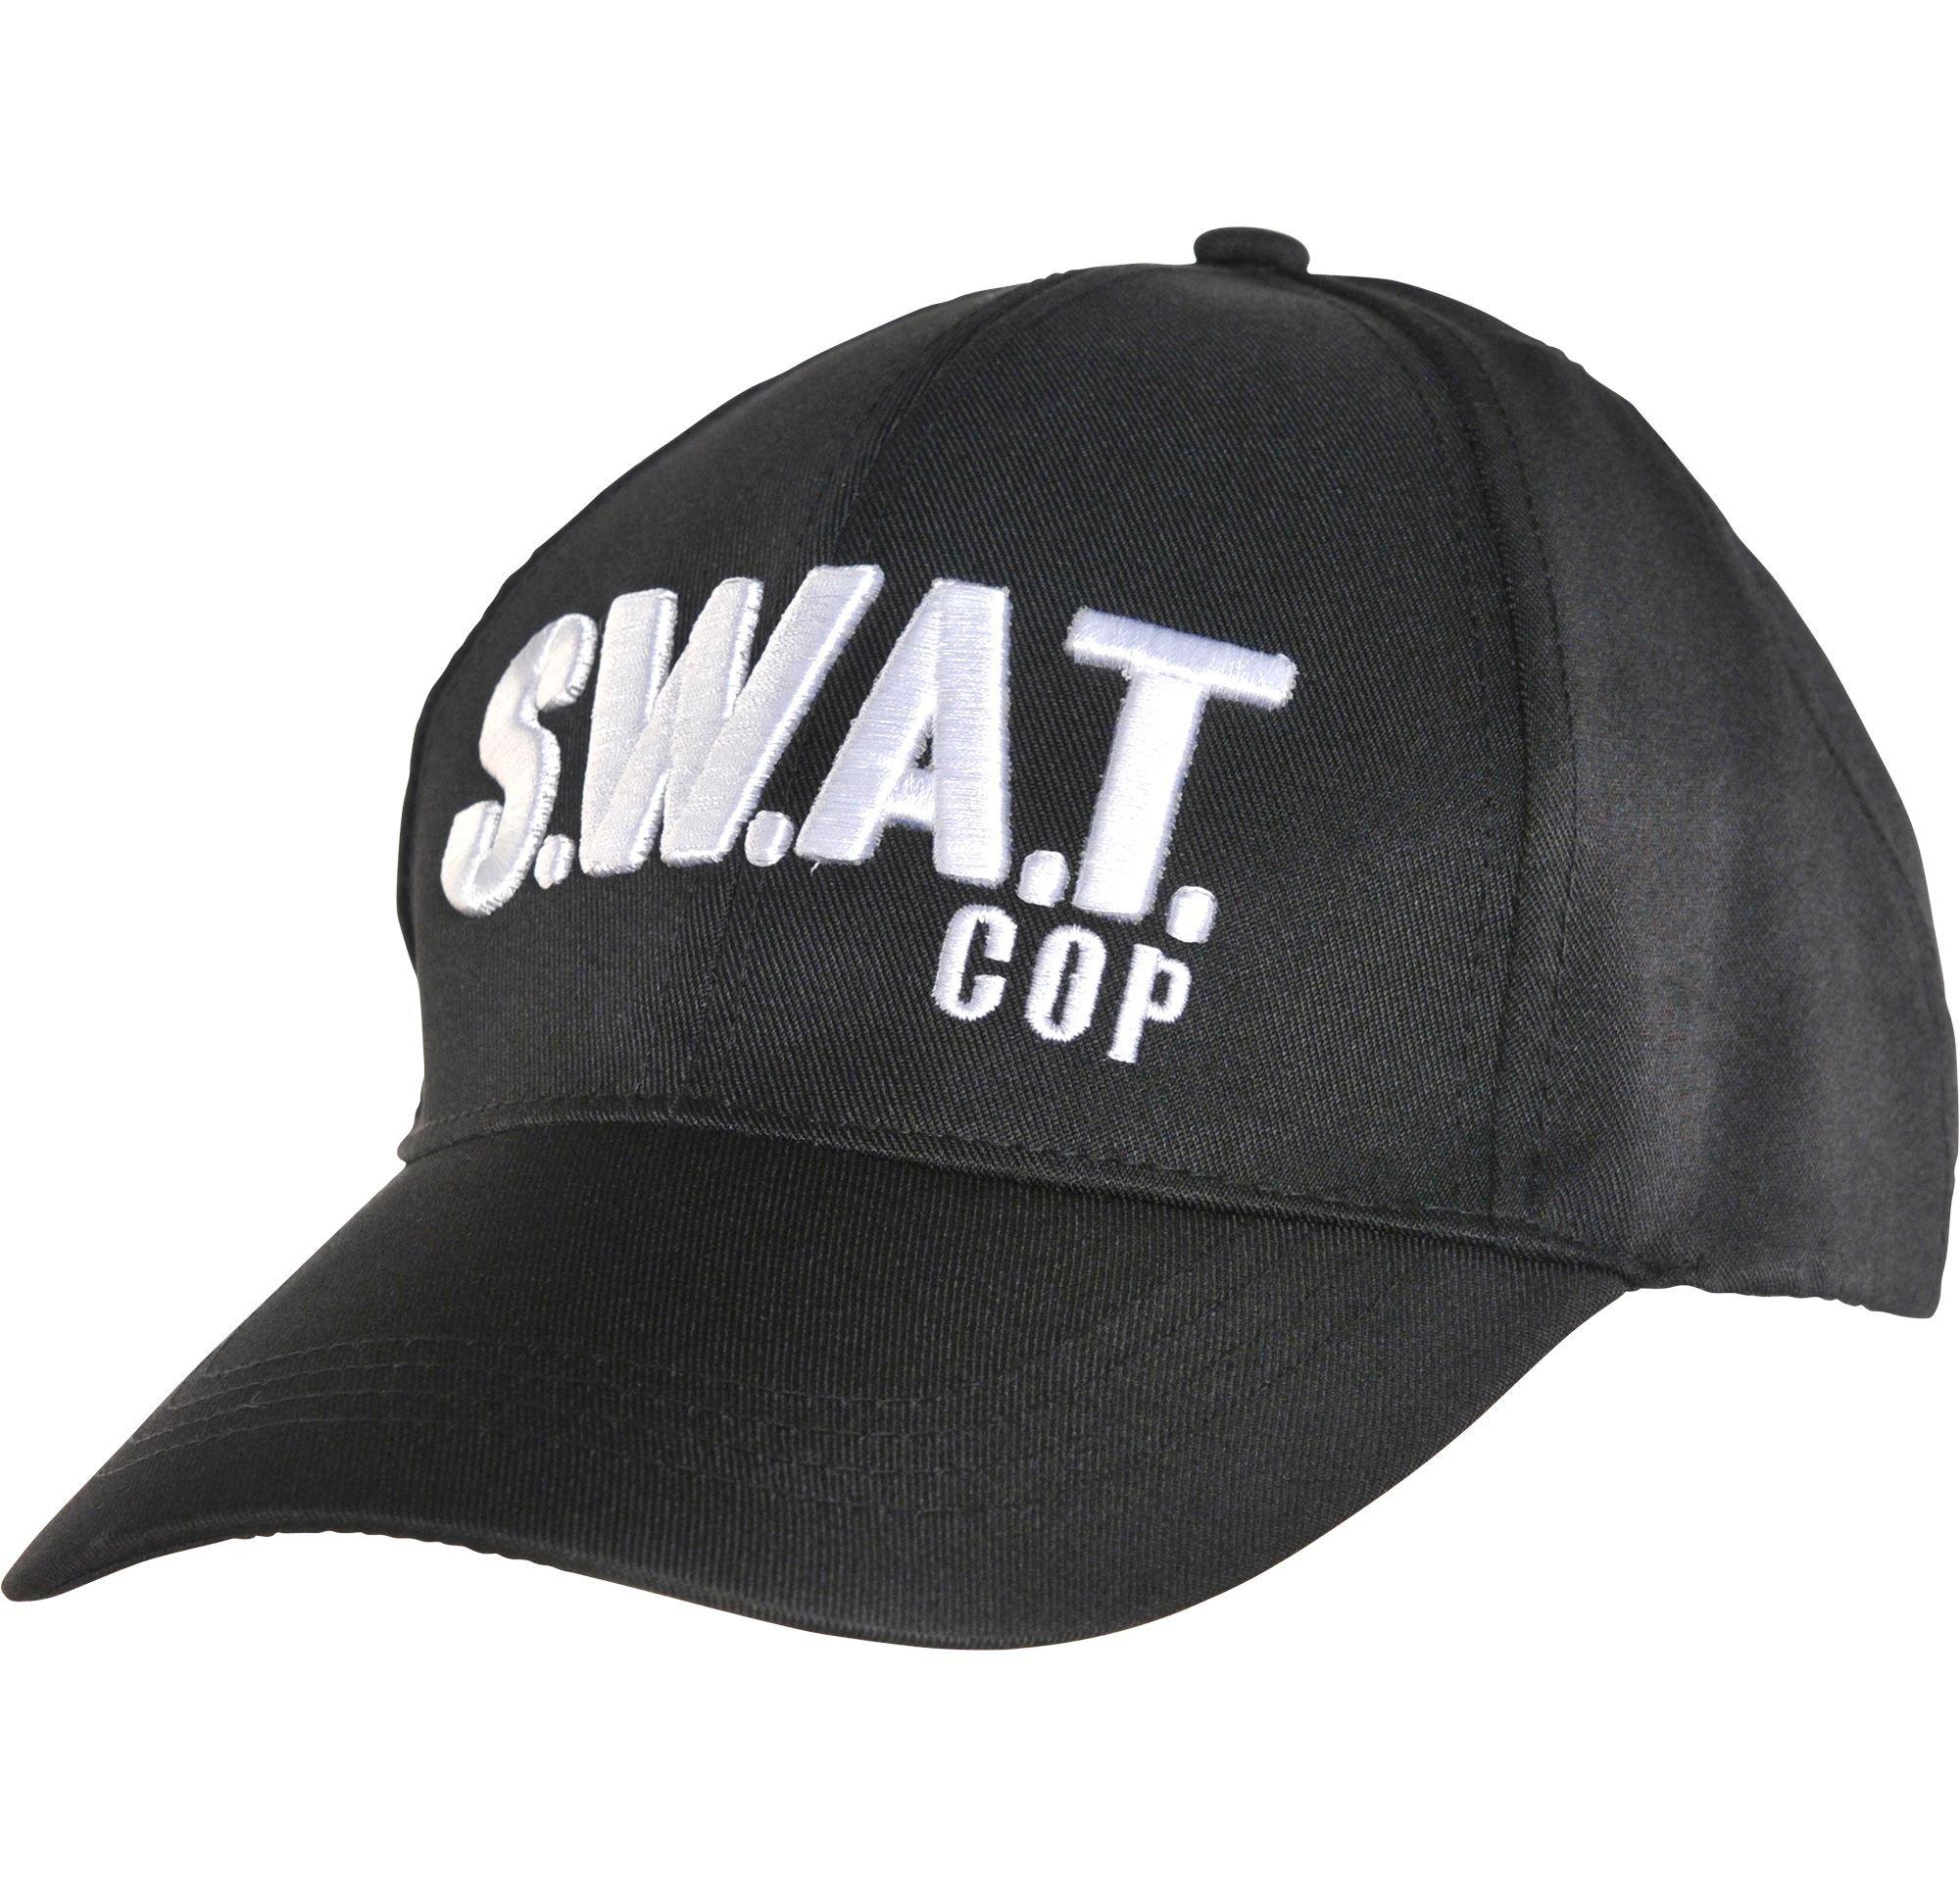 swat patrol caps